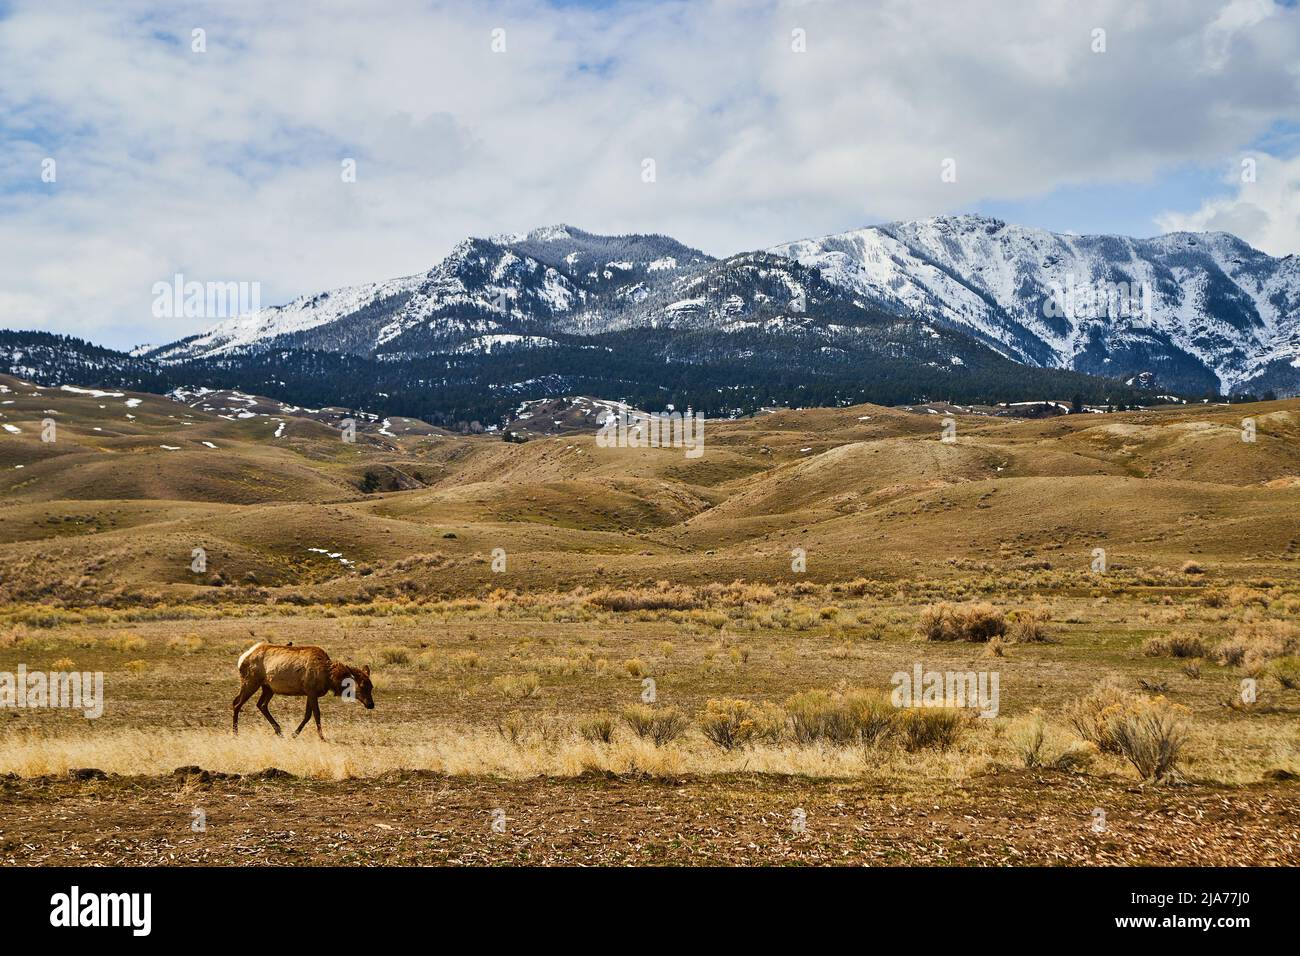 Les montagnes enneigées américaines par des champs de jaune avec des cerfs Banque D'Images